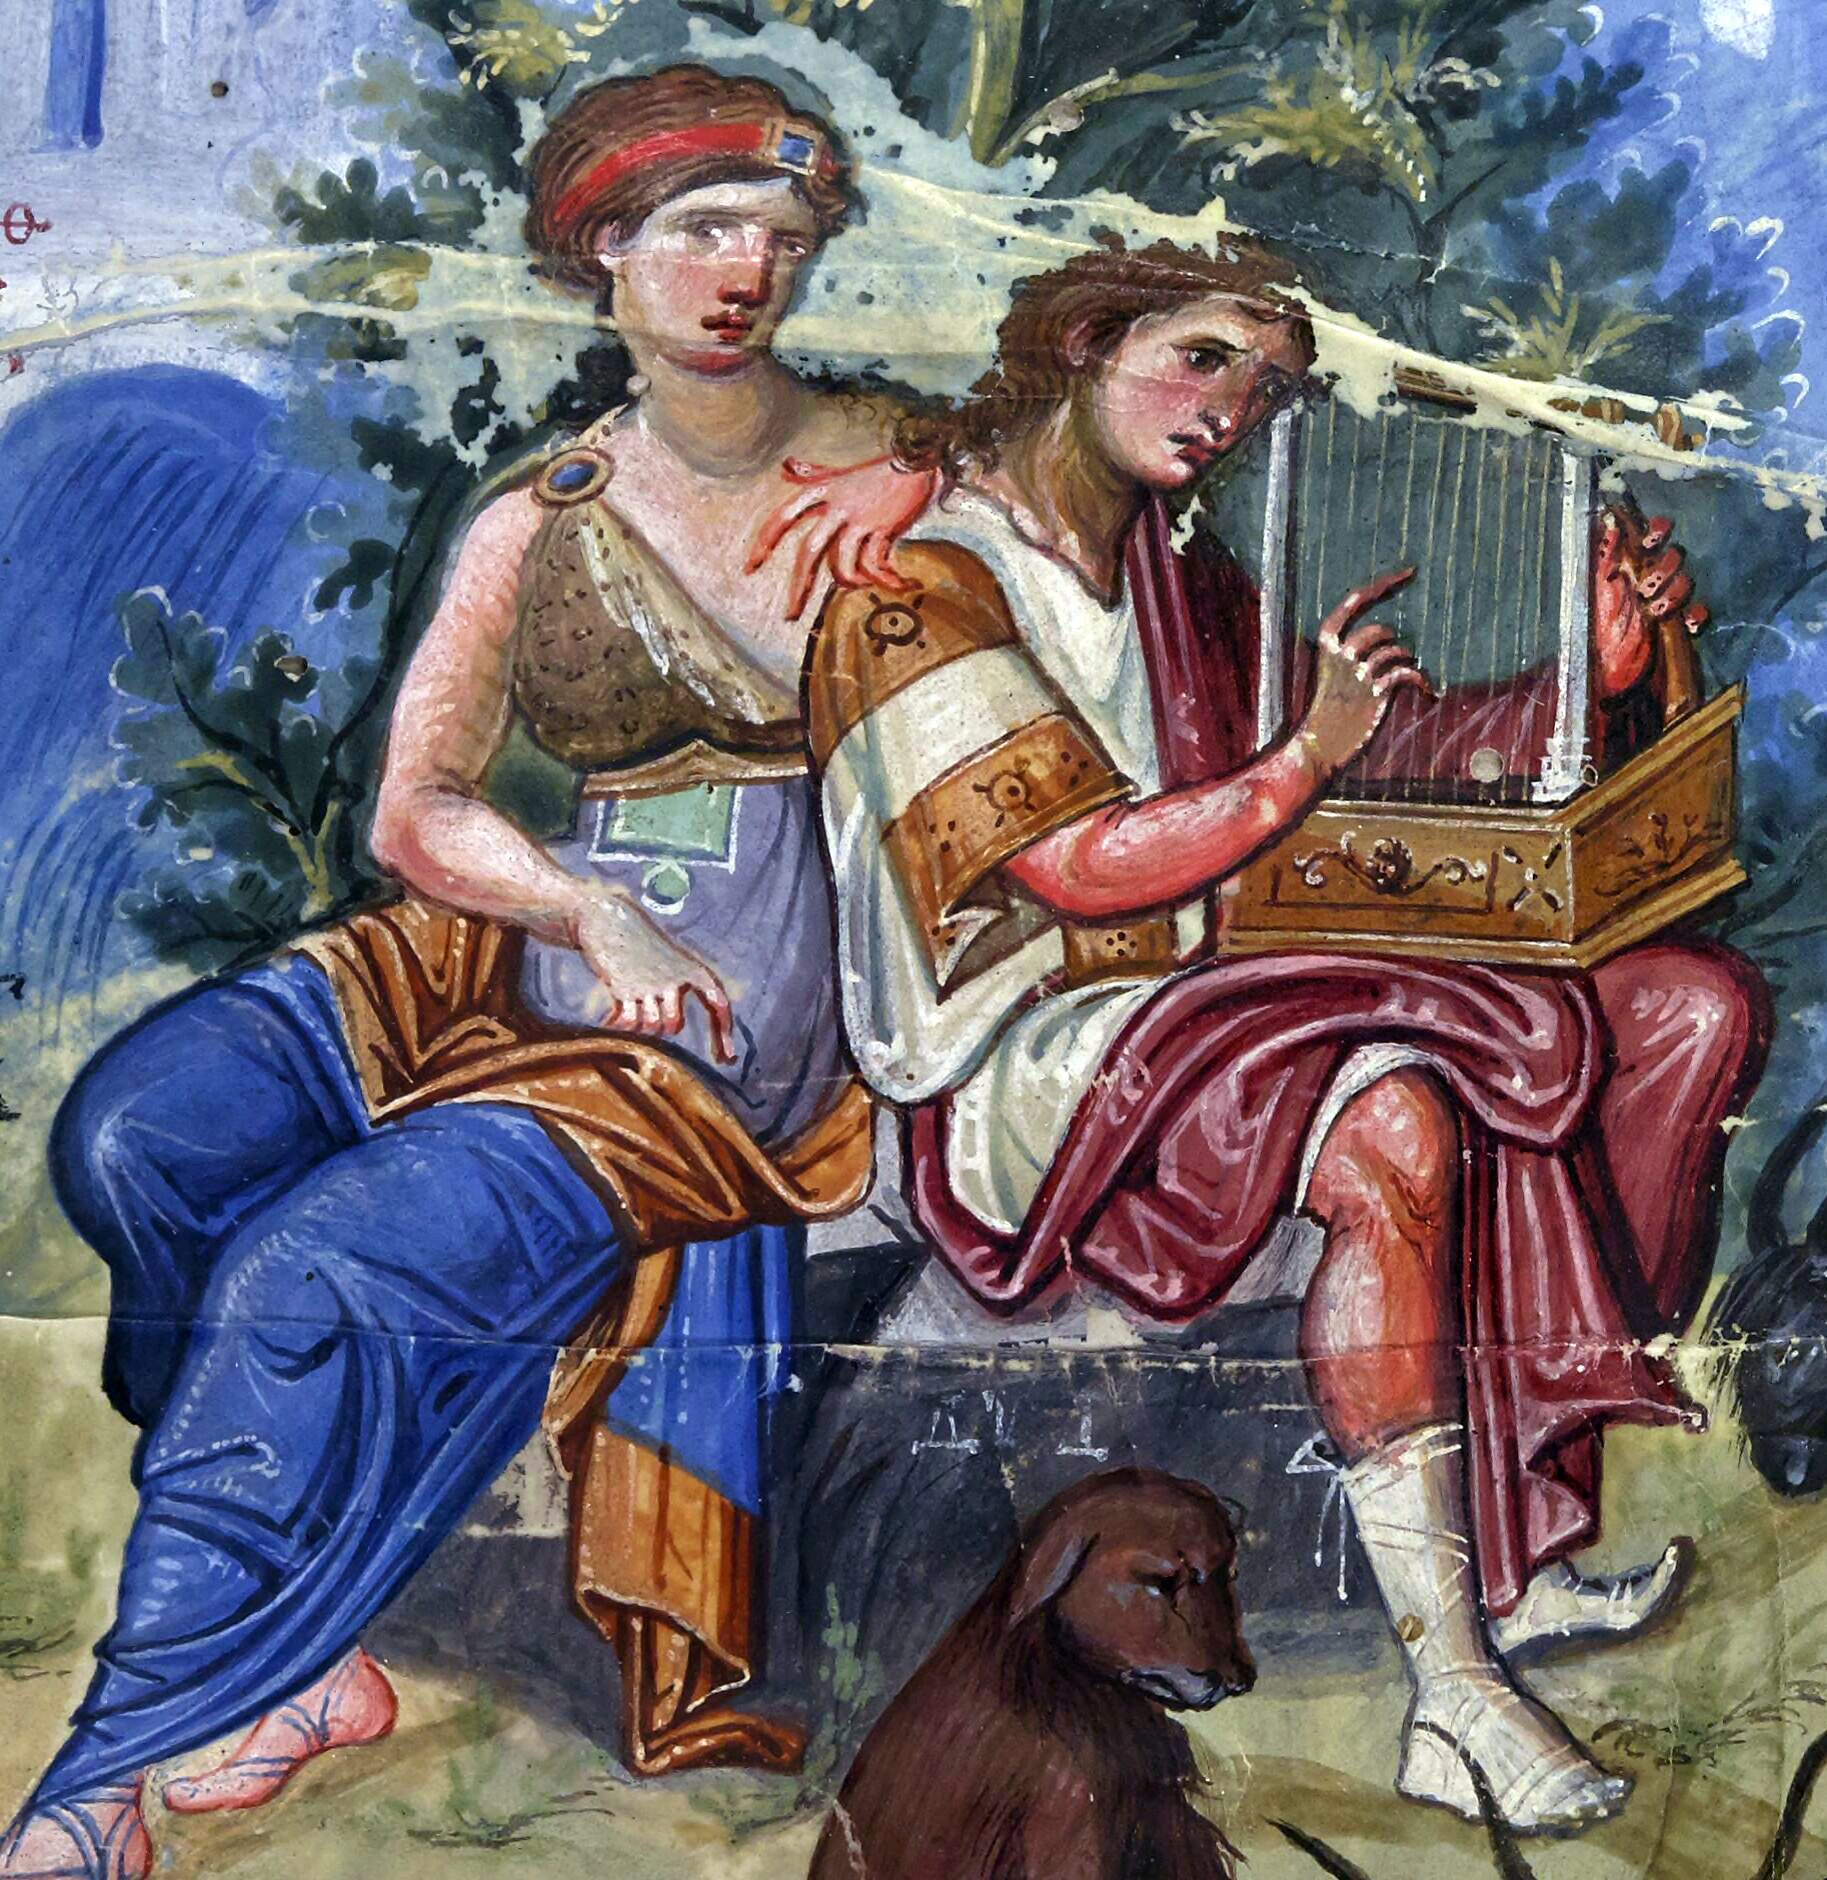 David Composing the Psalms (detail), from the Paris Psalter, c. 900 C.E., folio 1v, 36 x 26 cm (Bibliothèque nationale de France)